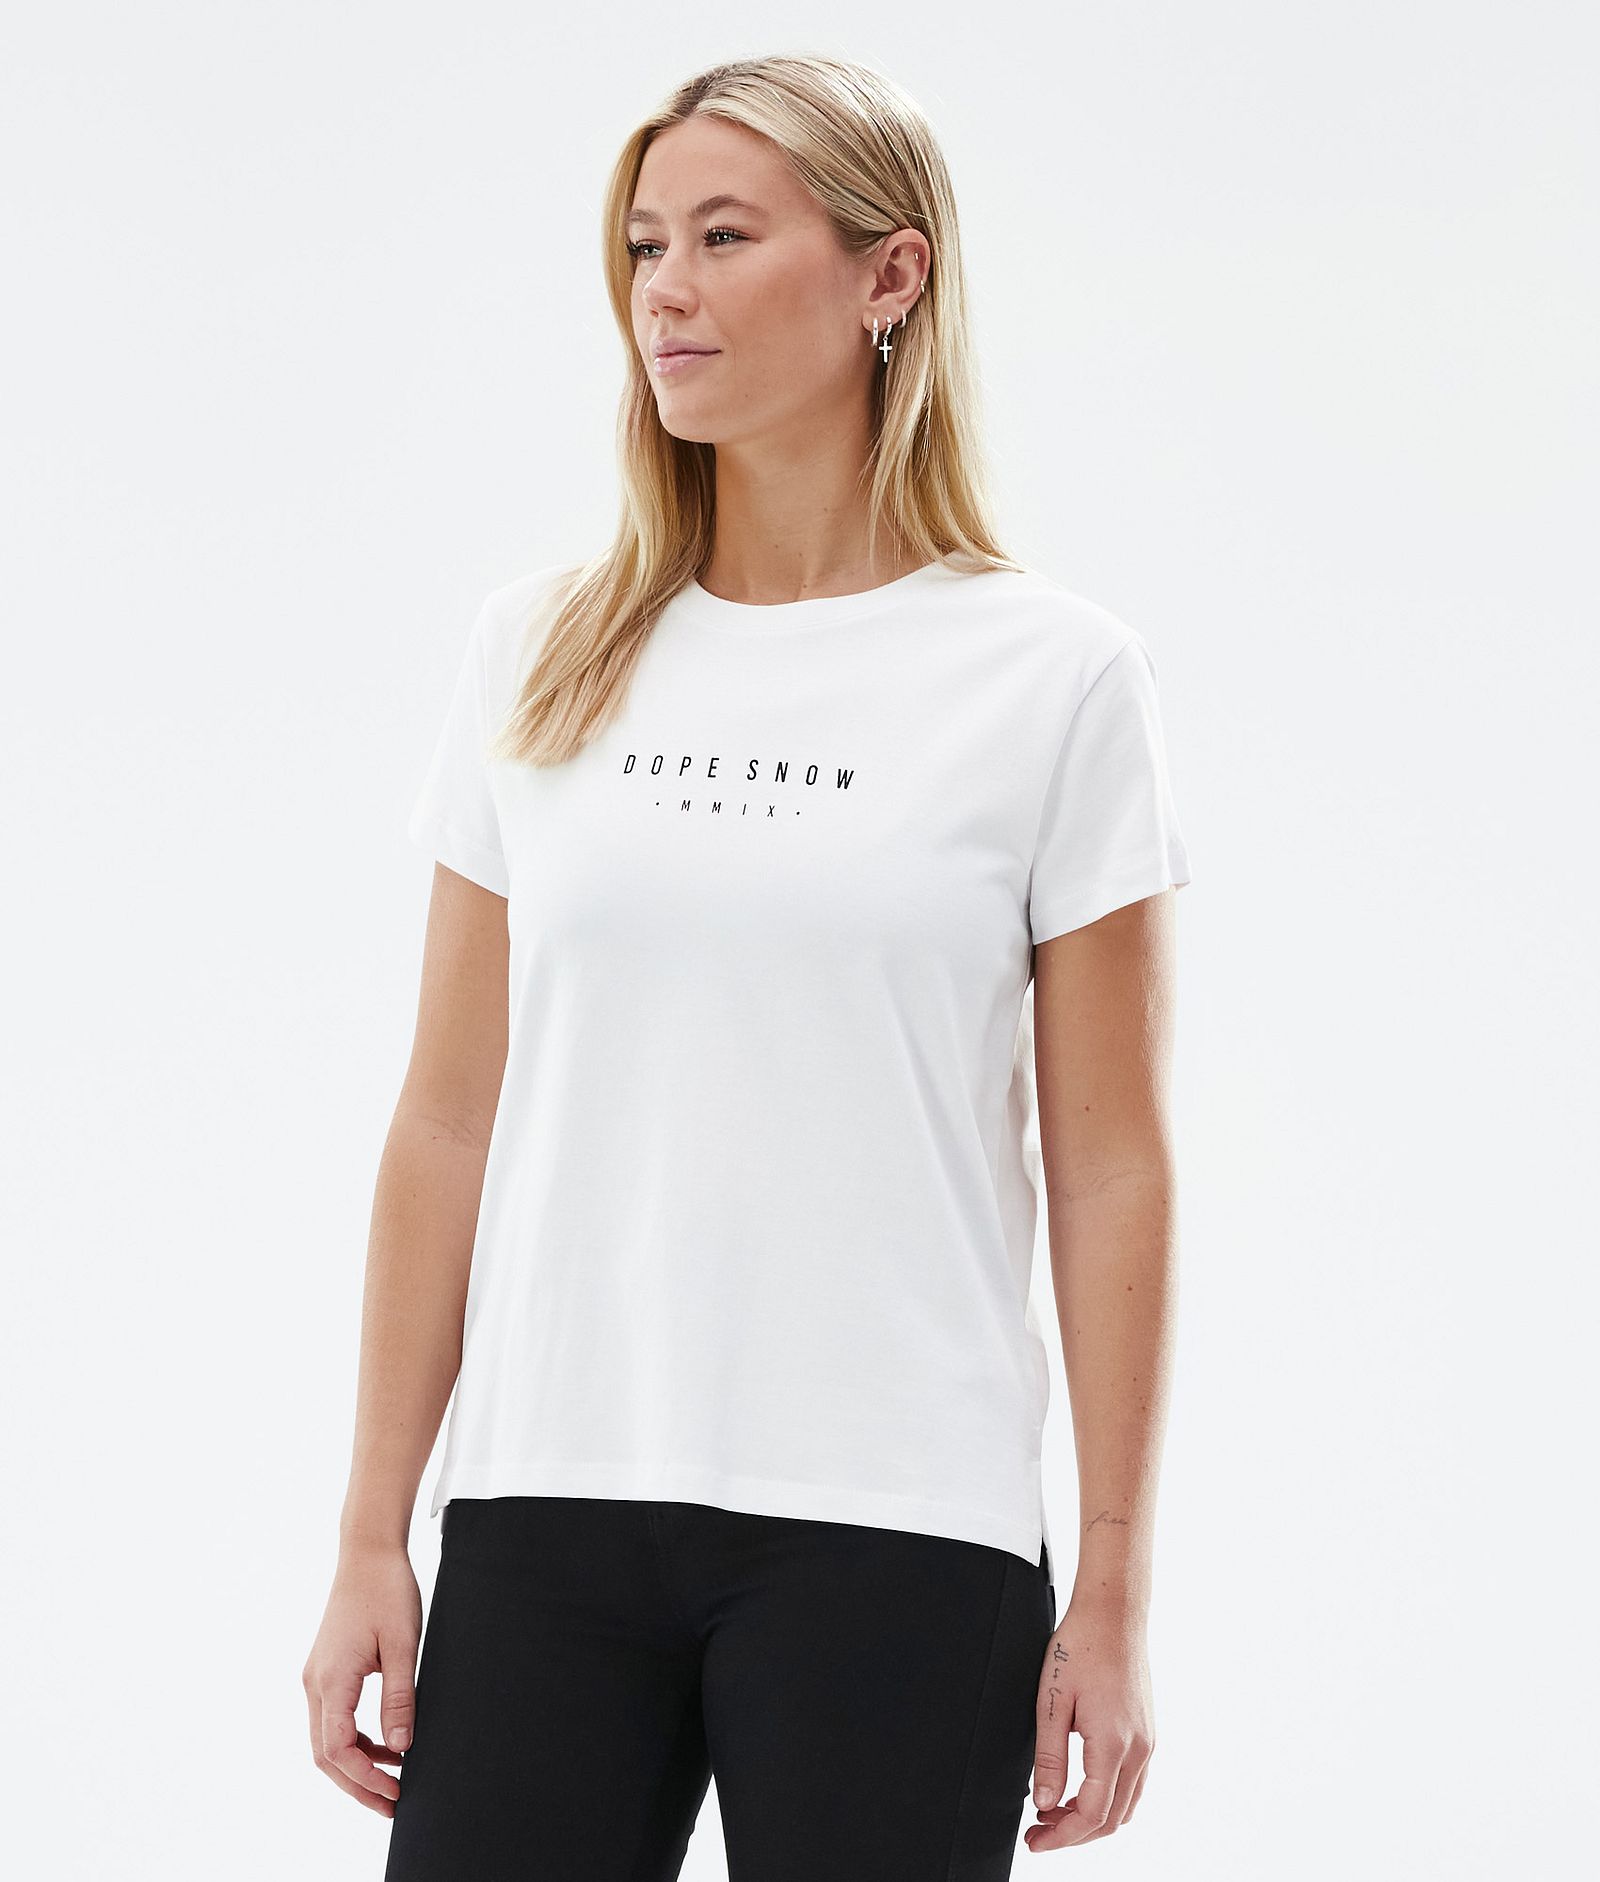 Dope Standard W T-shirt Dame Silhouette White, Bilde 2 av 6